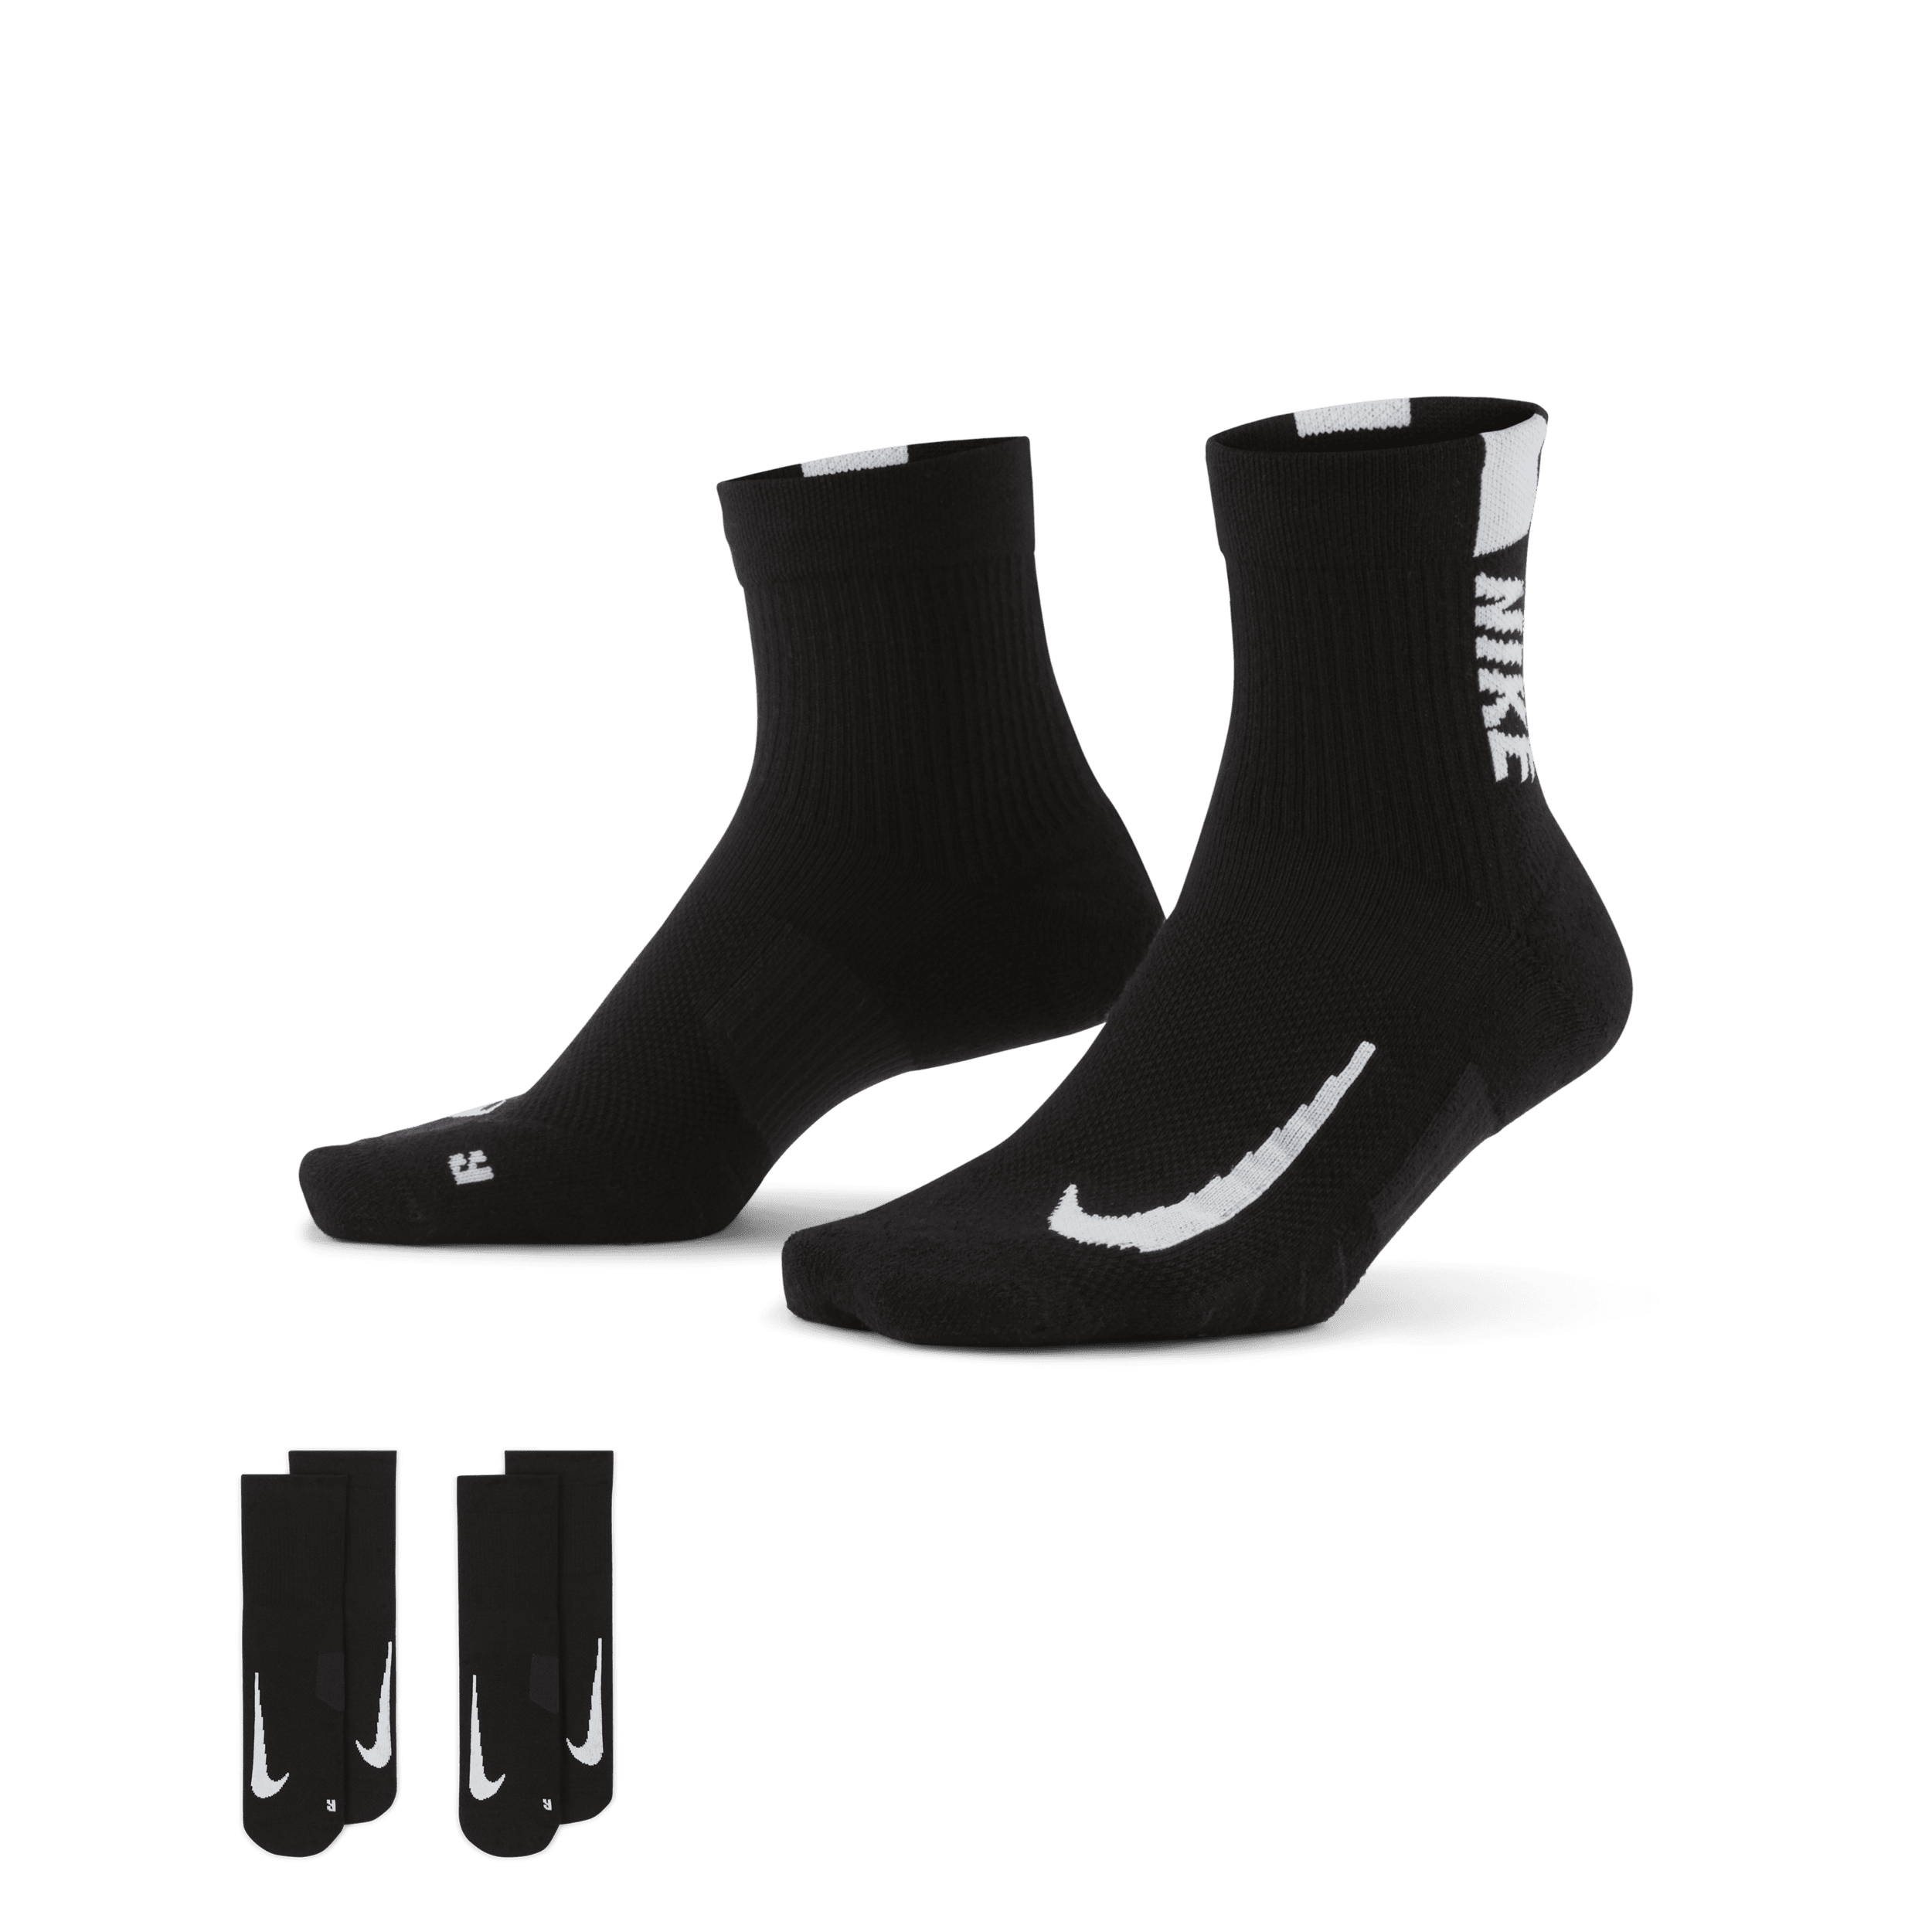 Nike Multiplier hardloopenkelsokken (2 paar) - Zwart